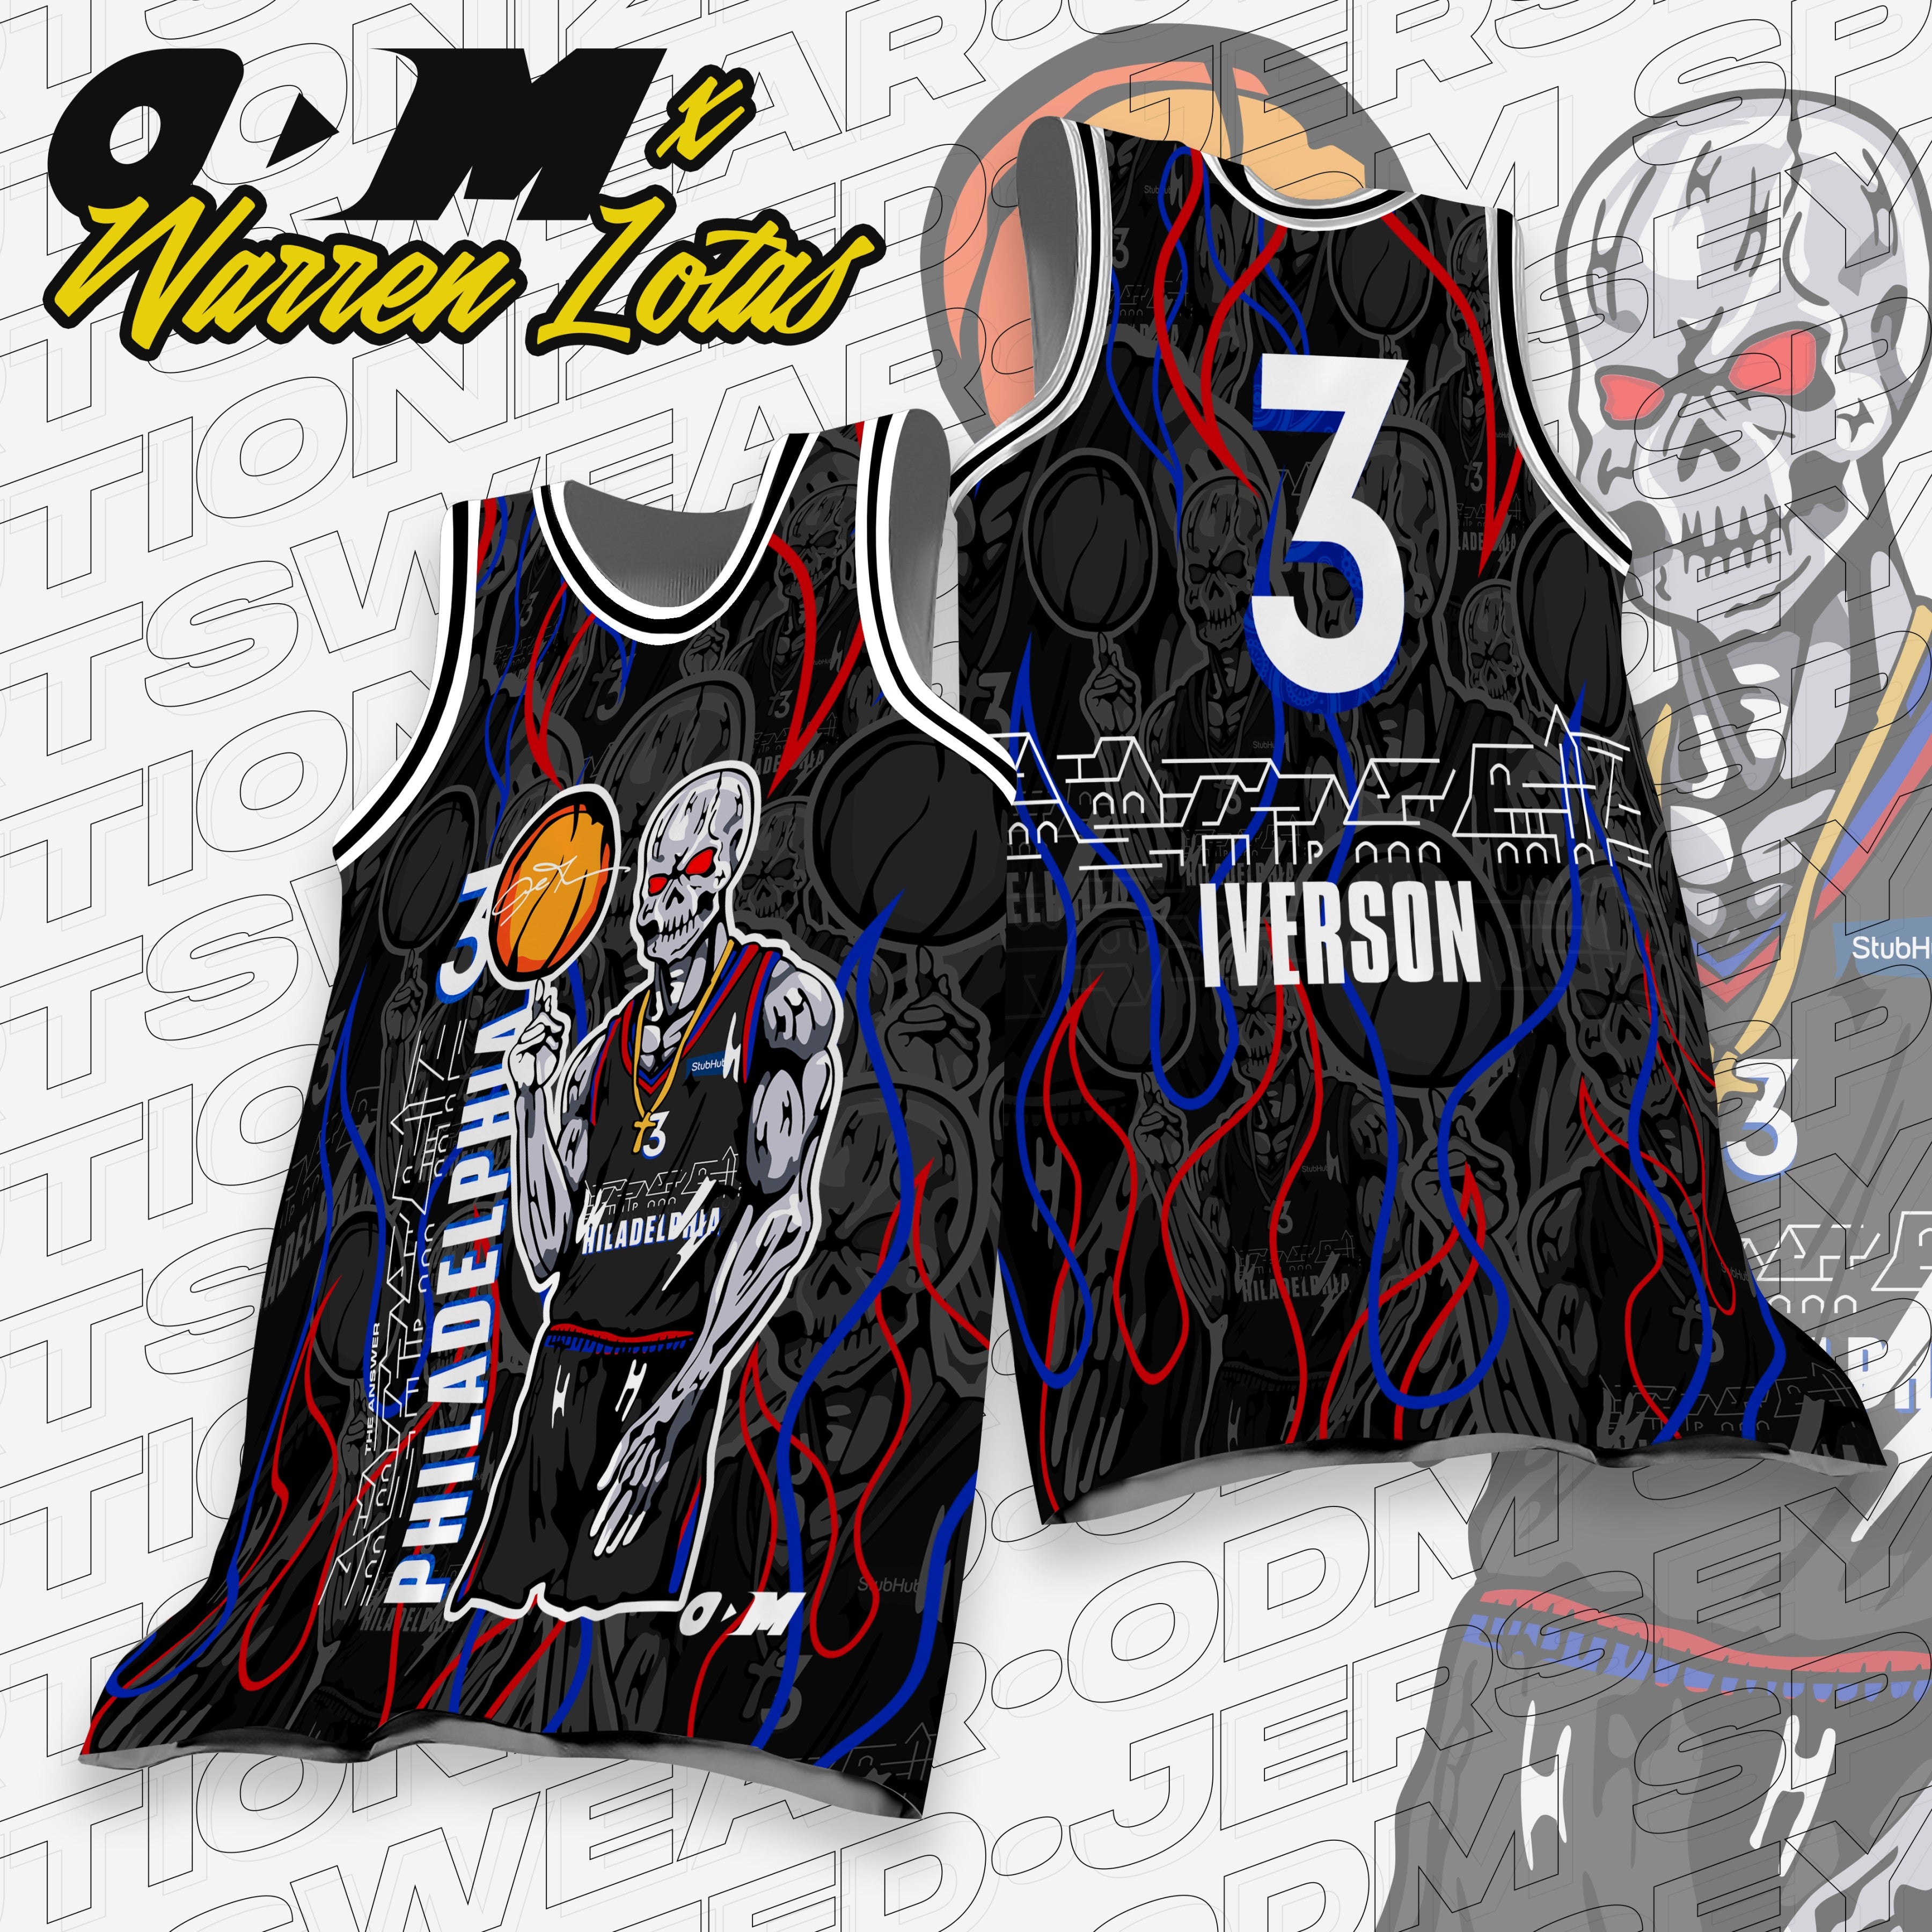 Iverson Sixers x Warren Lotas inspired jersey